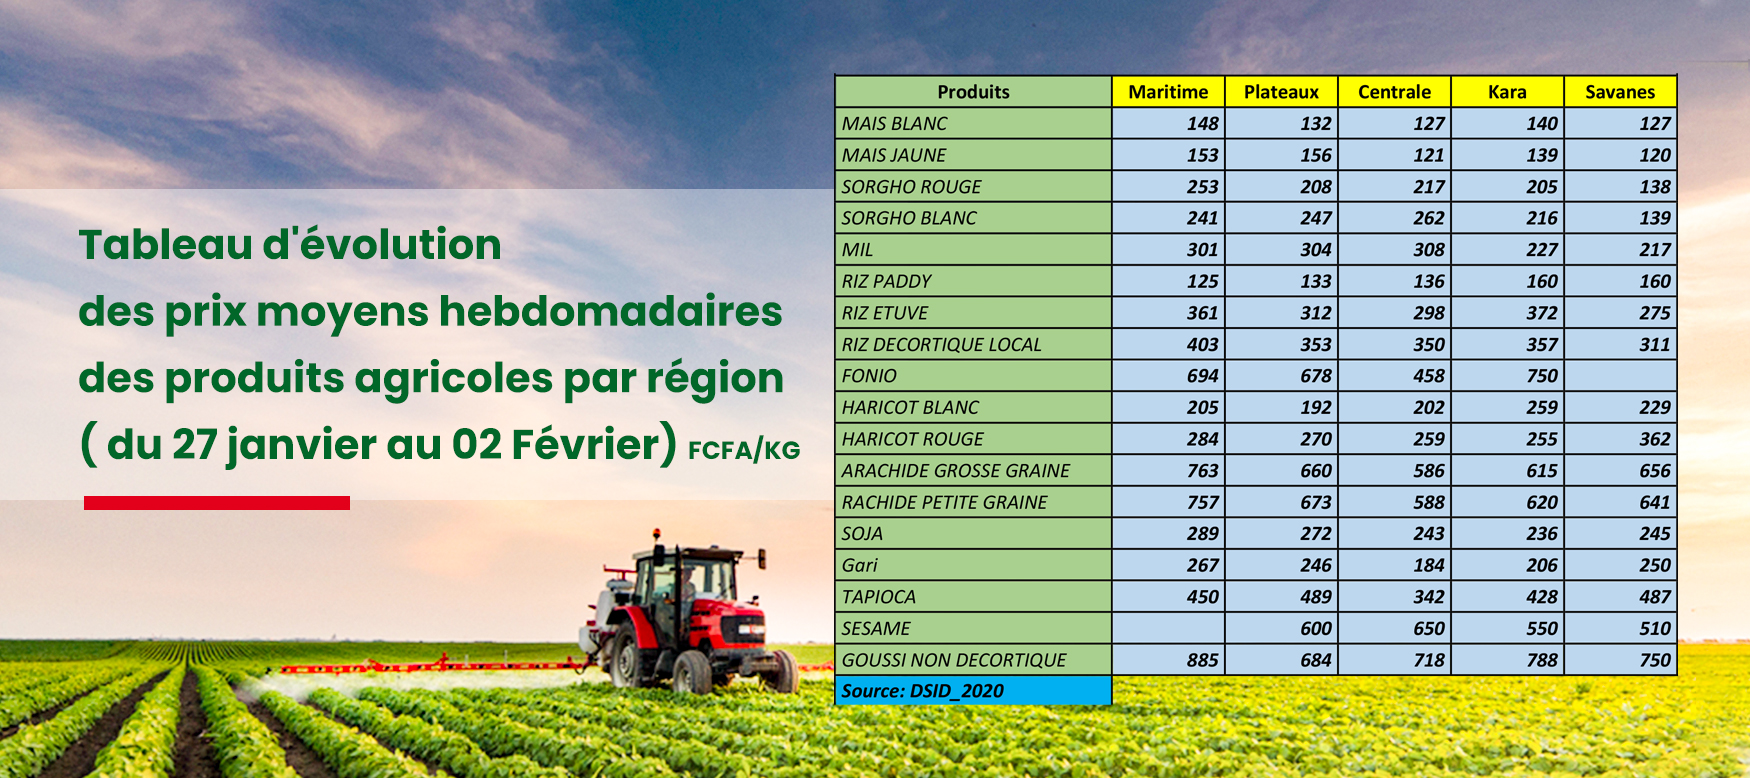 Tableau d'évolution des prix moyens hebdomadaire des produits agricoles par région (du 27 janvier au 02 février 2020) FCFA/KG